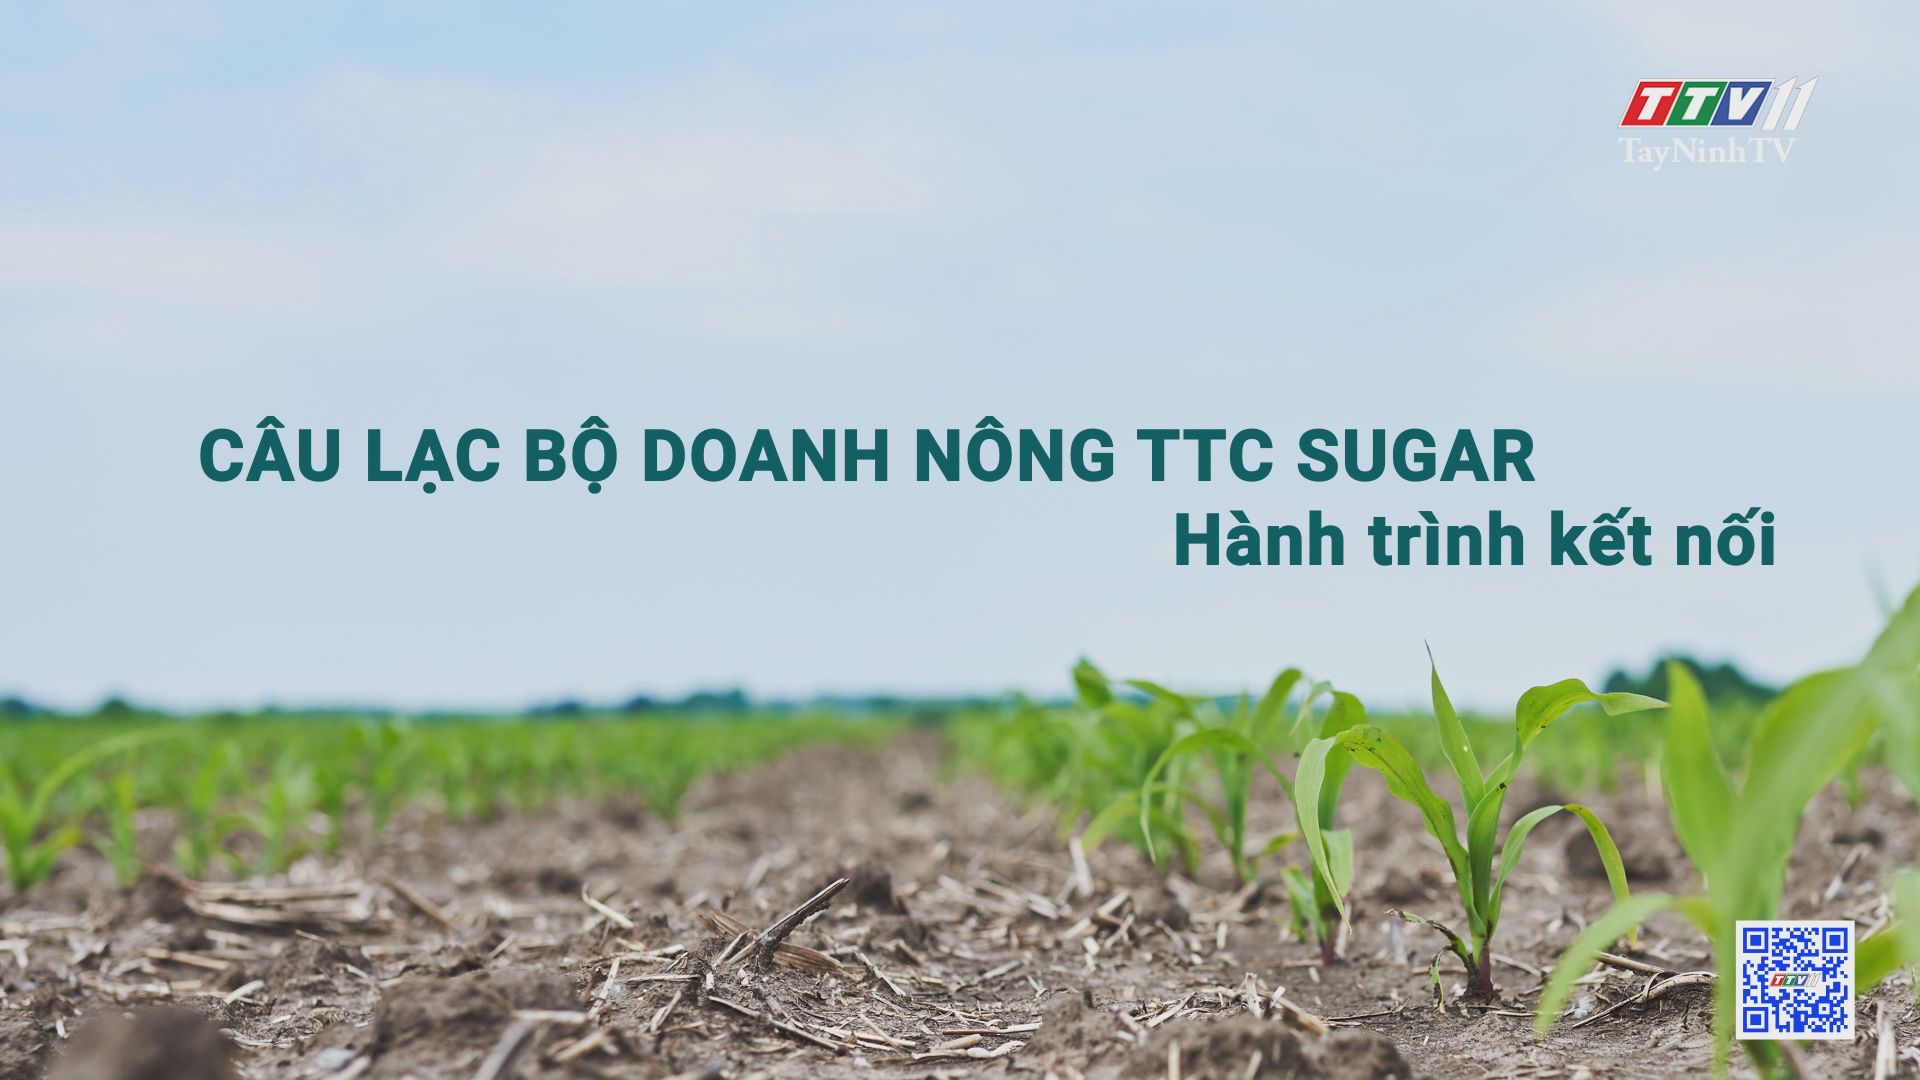 Câu lạc bộ Doanh nông TTC Sugar – Hành trình kết nối | Cây mía Việt | TayNinhTV